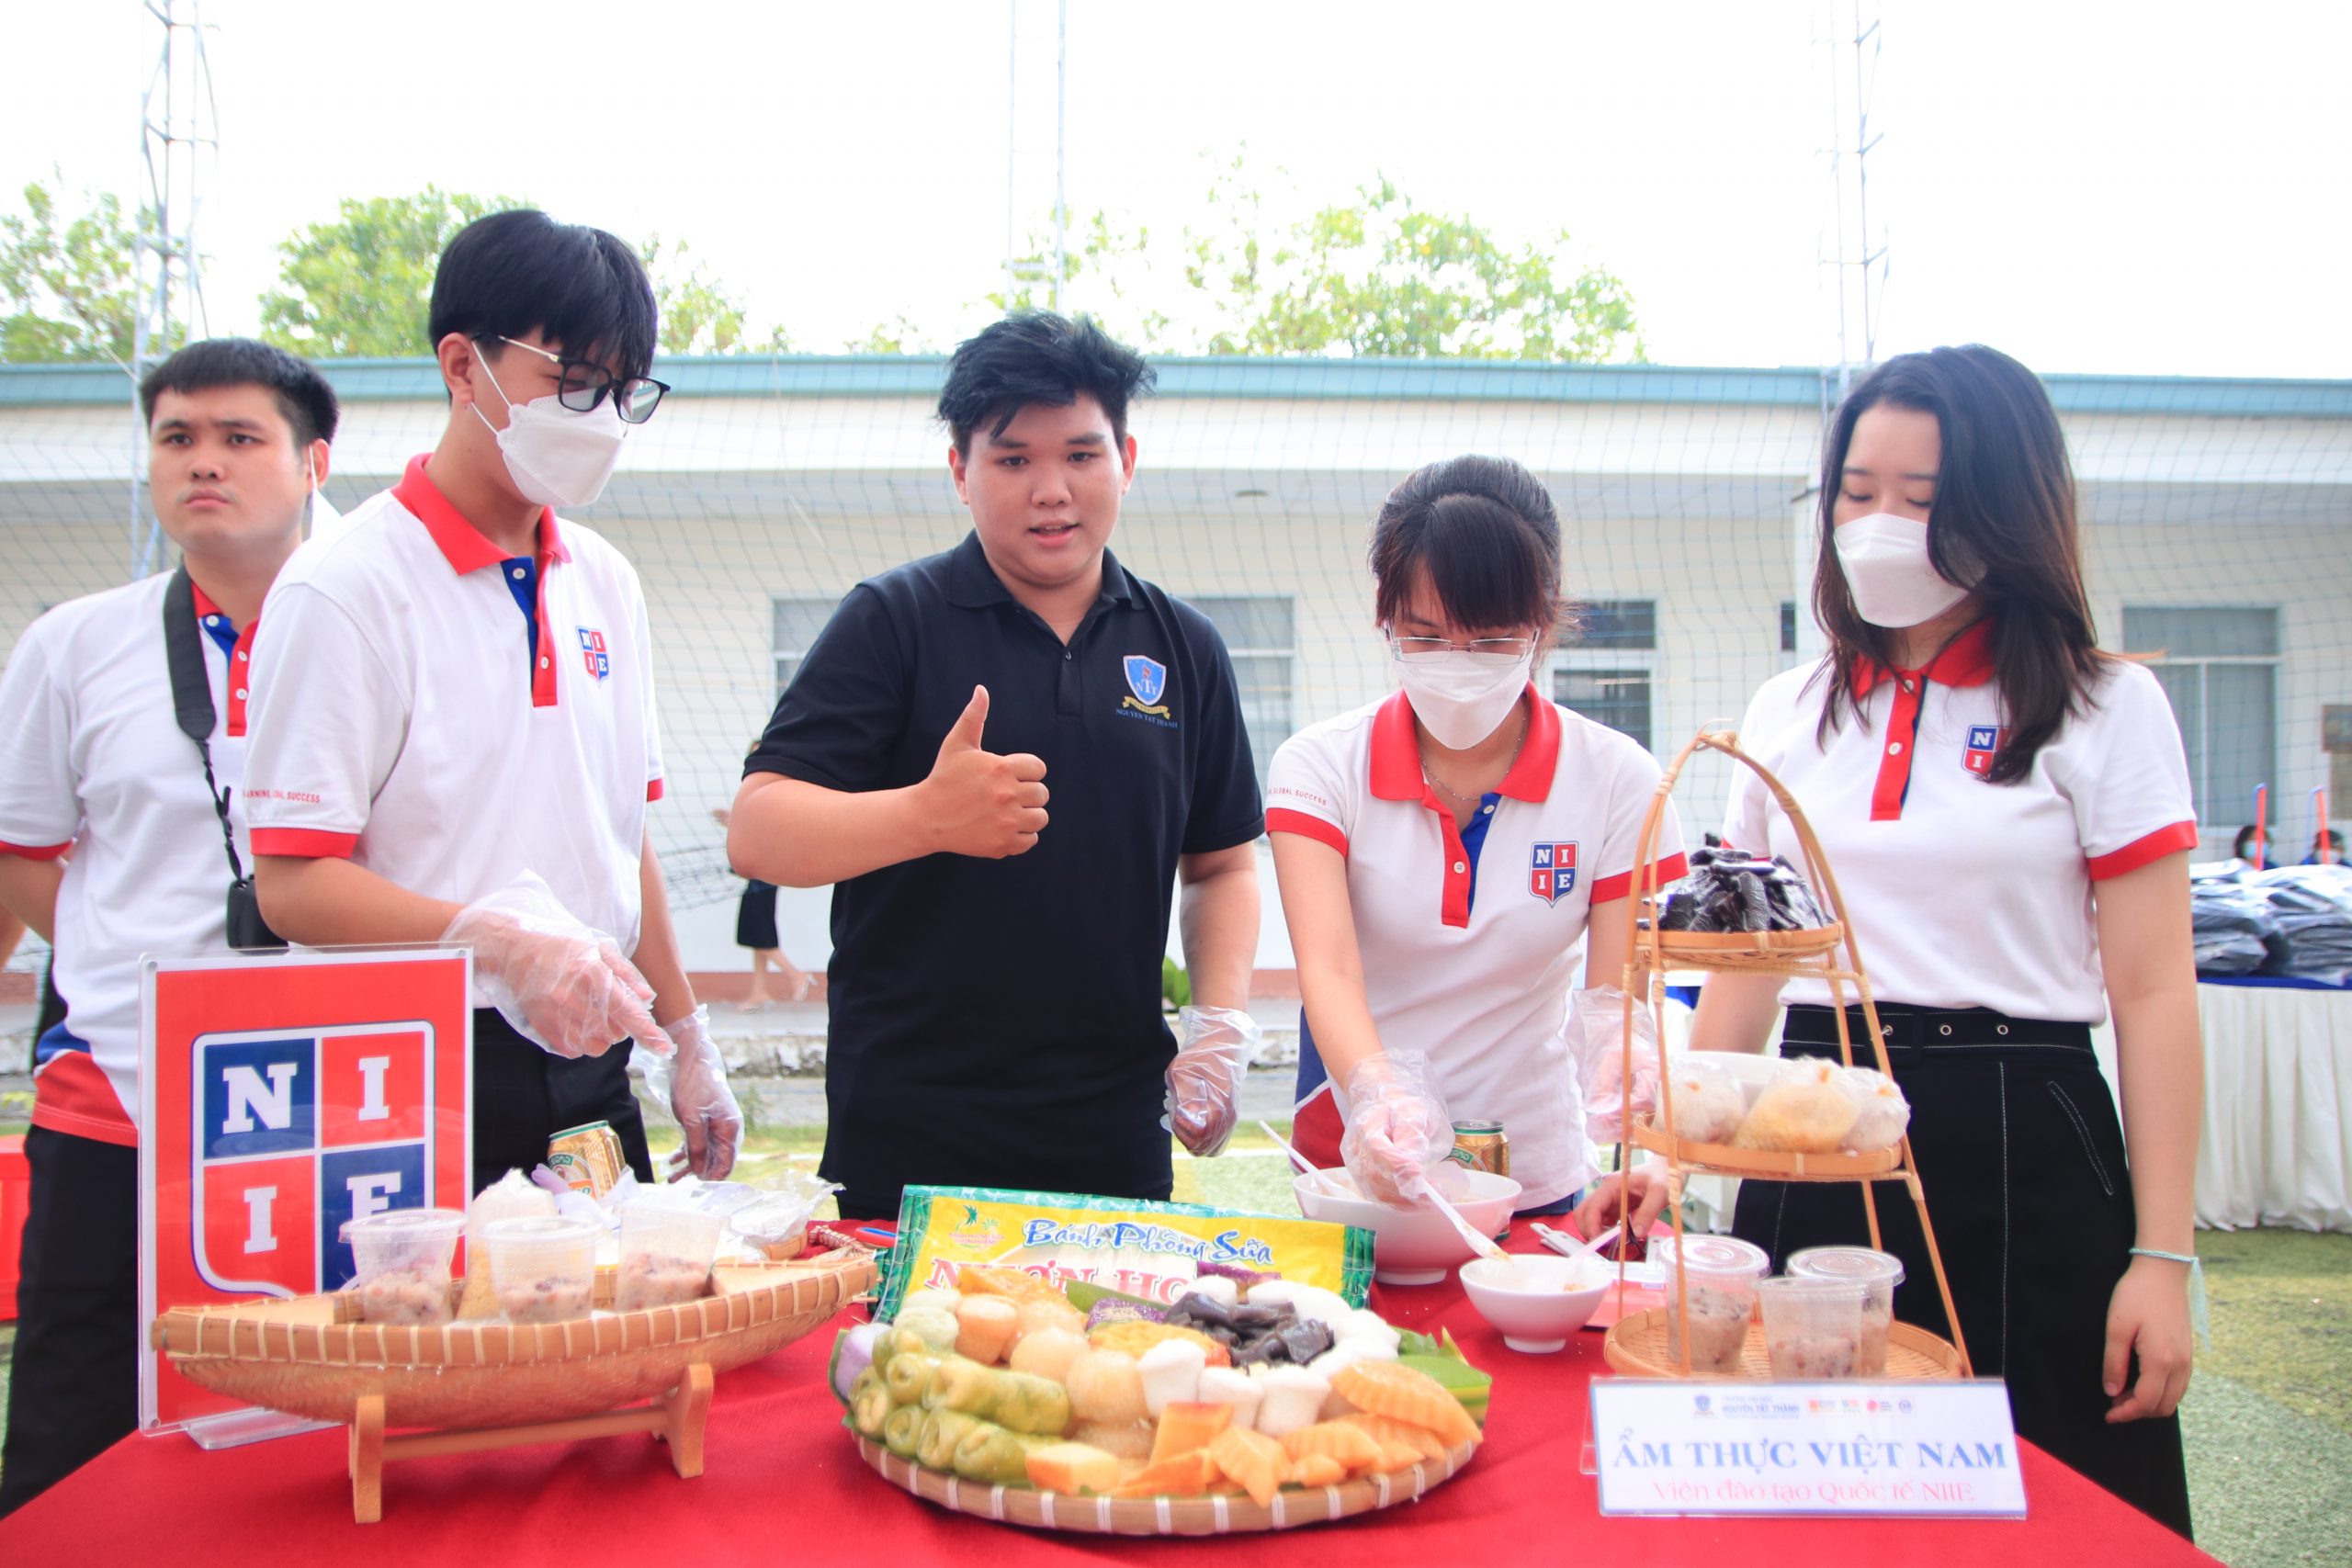 Đến với chương trình lần này, NIIE có vai trò là cầu nối, giới thiệu văn hóa ẩm thực Việt Nam đến bạn bè quốc tế.